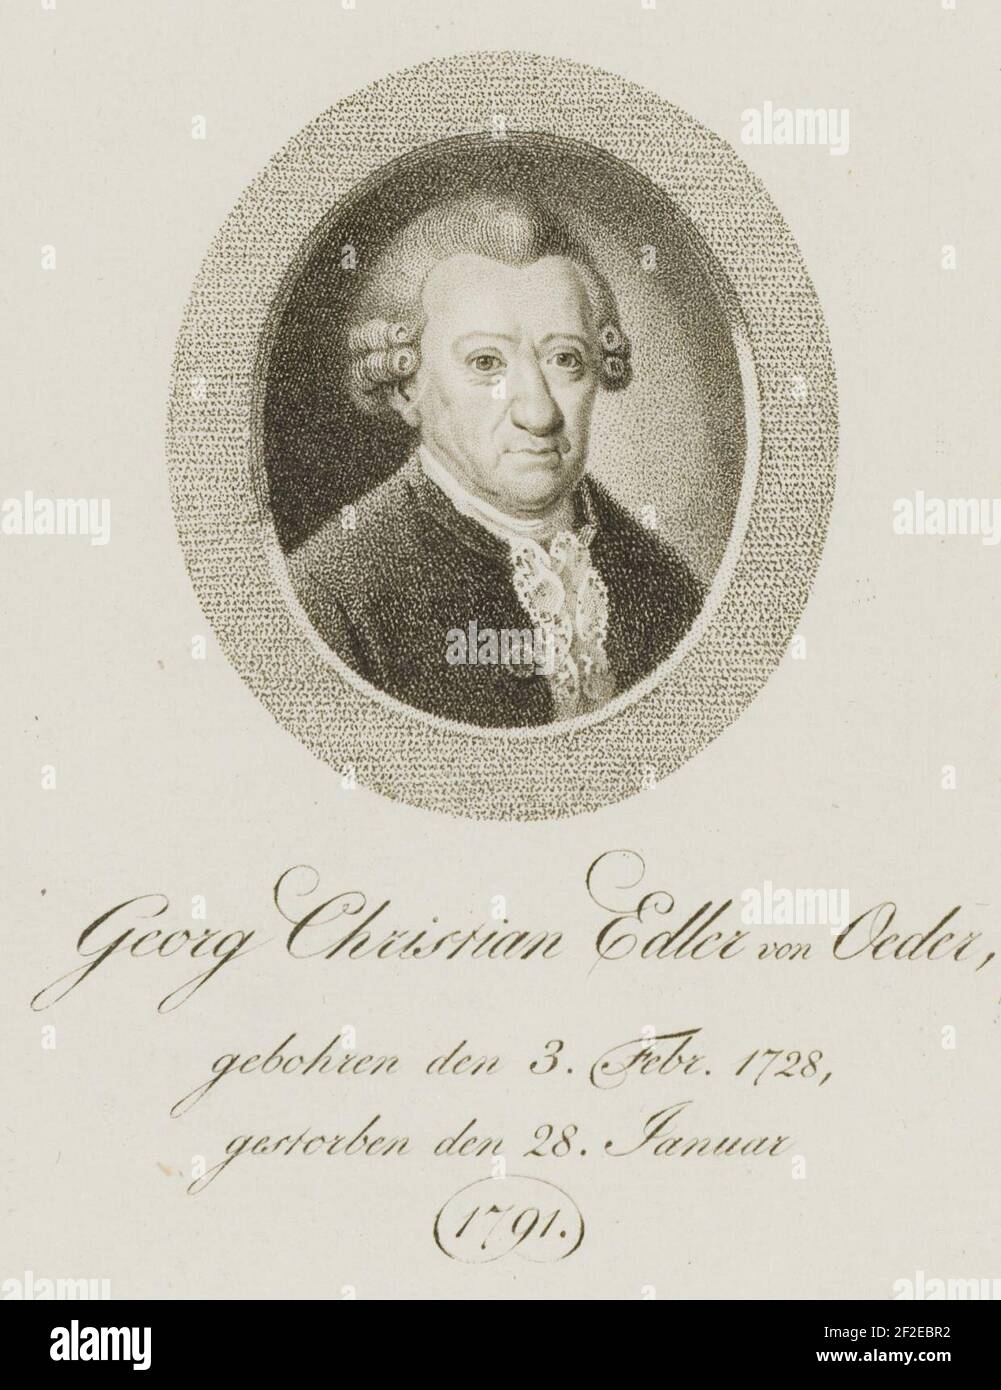 Georg Christian Edler von Oeder, gebohren den 3. Febr. 1728, gestorben den 28. Januar. Stockfoto